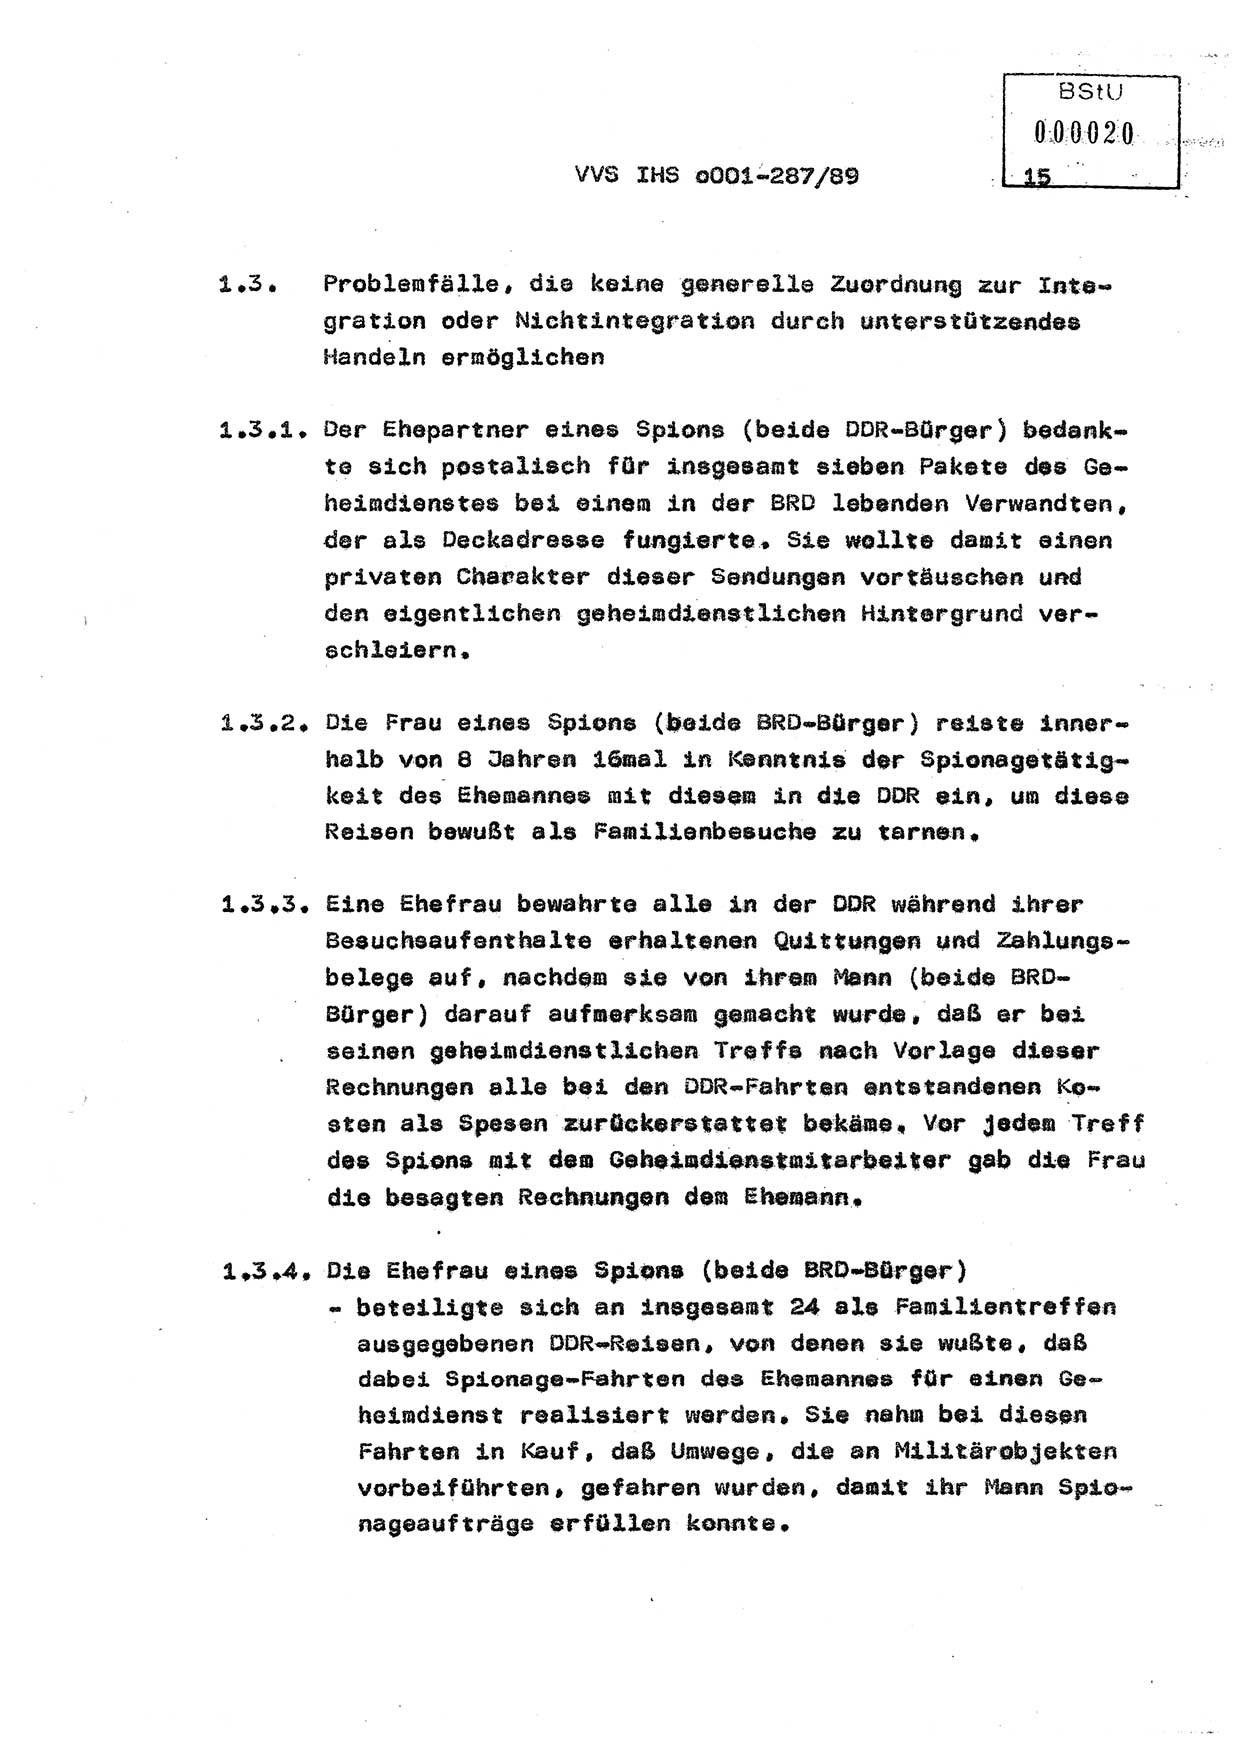 Diplomarbeit, Offiziersschüler Harald Wabst (HA Ⅸ/1), Ministerium für Staatssicherheit (MfS) [Deutsche Demokratische Republik (DDR)], Juristische Hochschule (JHS), Vertrauliche Verschlußsache (VVS) o001-287/89, Potsdam 1989, Seite 15 (Dipl.-Arb. MfS DDR JHS VVS o001-287/89 1989, S. 15)